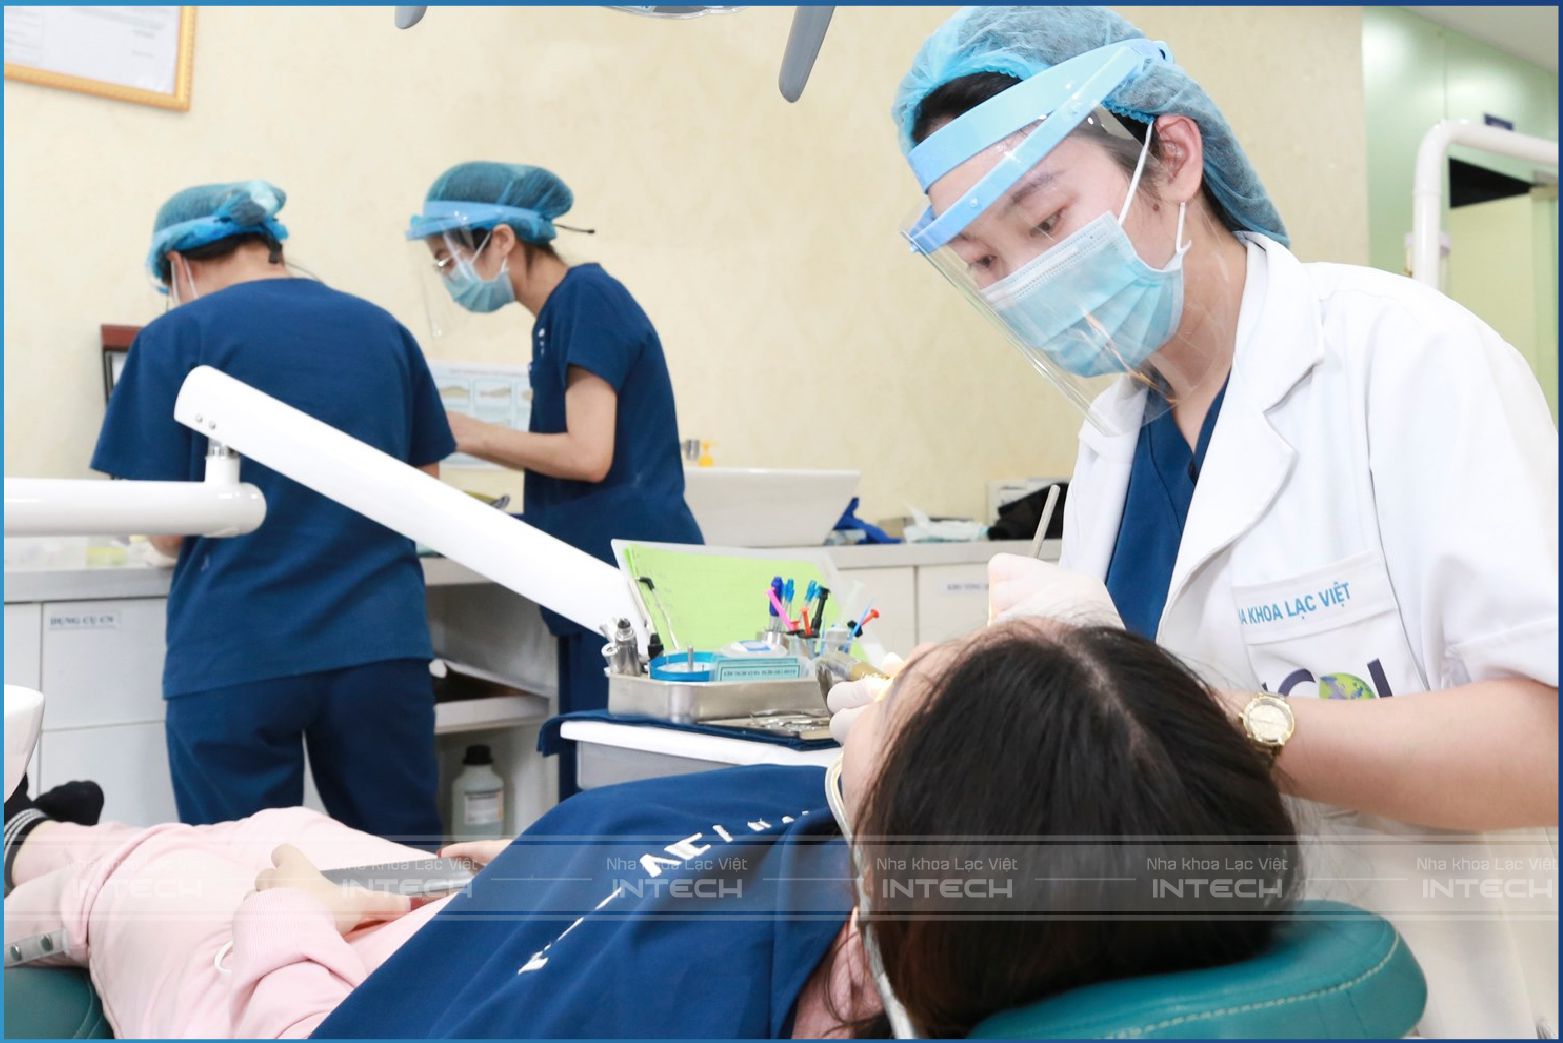 Hình ảnh tại nha khoa Lạc Việt Intech: Bác sĩ điều trị tình trạng răng hởi lợi